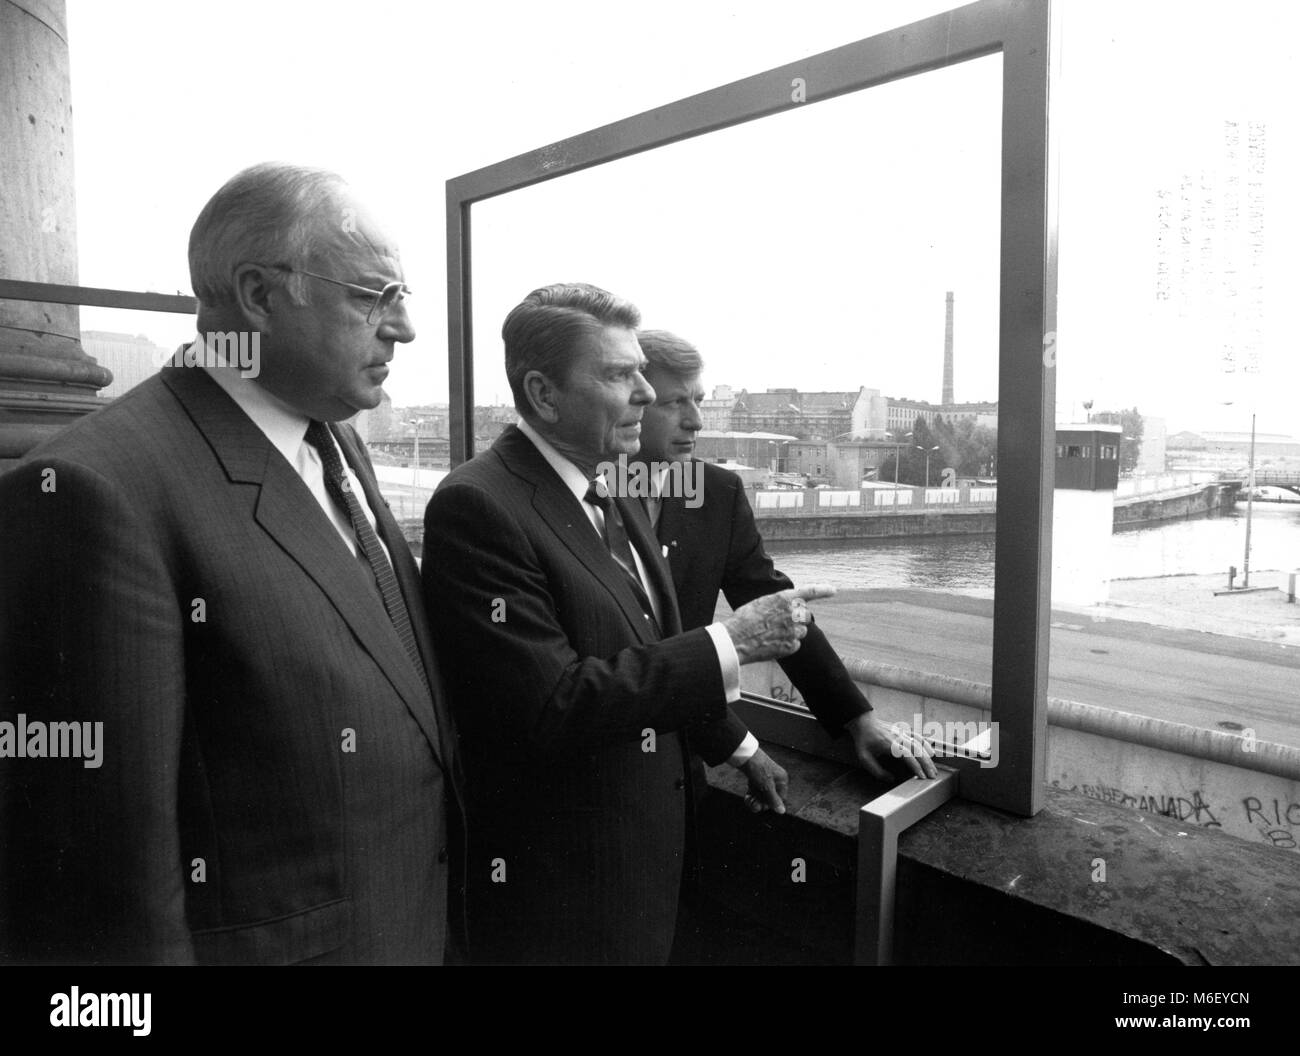 U S Präsident Ronald Reagan (Mitte) mit Blick auf die Berliner Mauer vom Balkon des Reichstags, von Bundeskanzler Dr. Helmut Kohl (links) und Bürgermeister von Berlin Eberhard Diepgen (rechts), Berlin, 06/12/1987 flankiert. Stockfoto